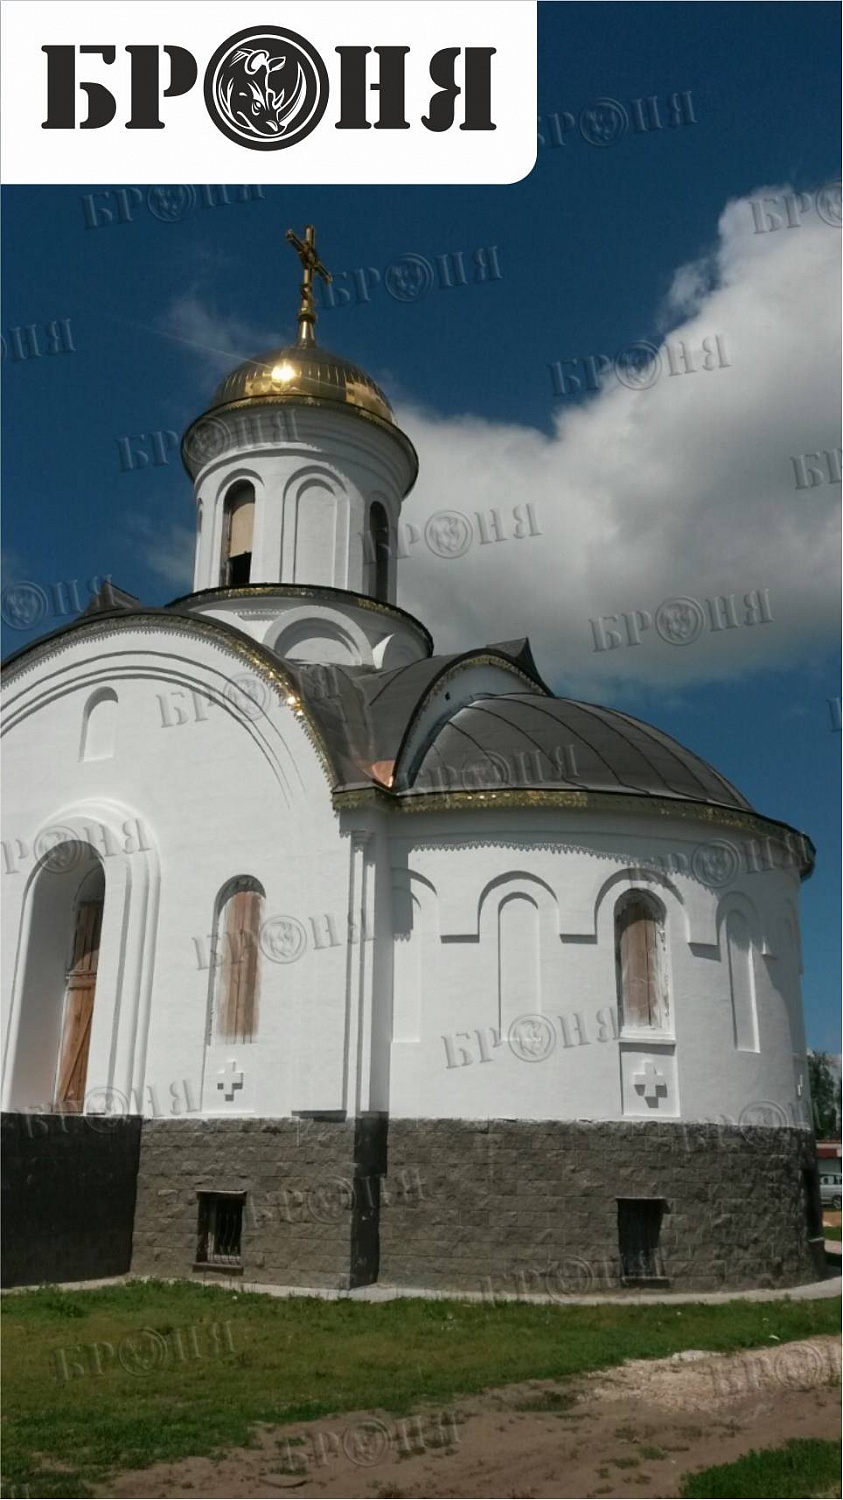 Ульяновская область, приход храма в честь Св. вмц. Ирины